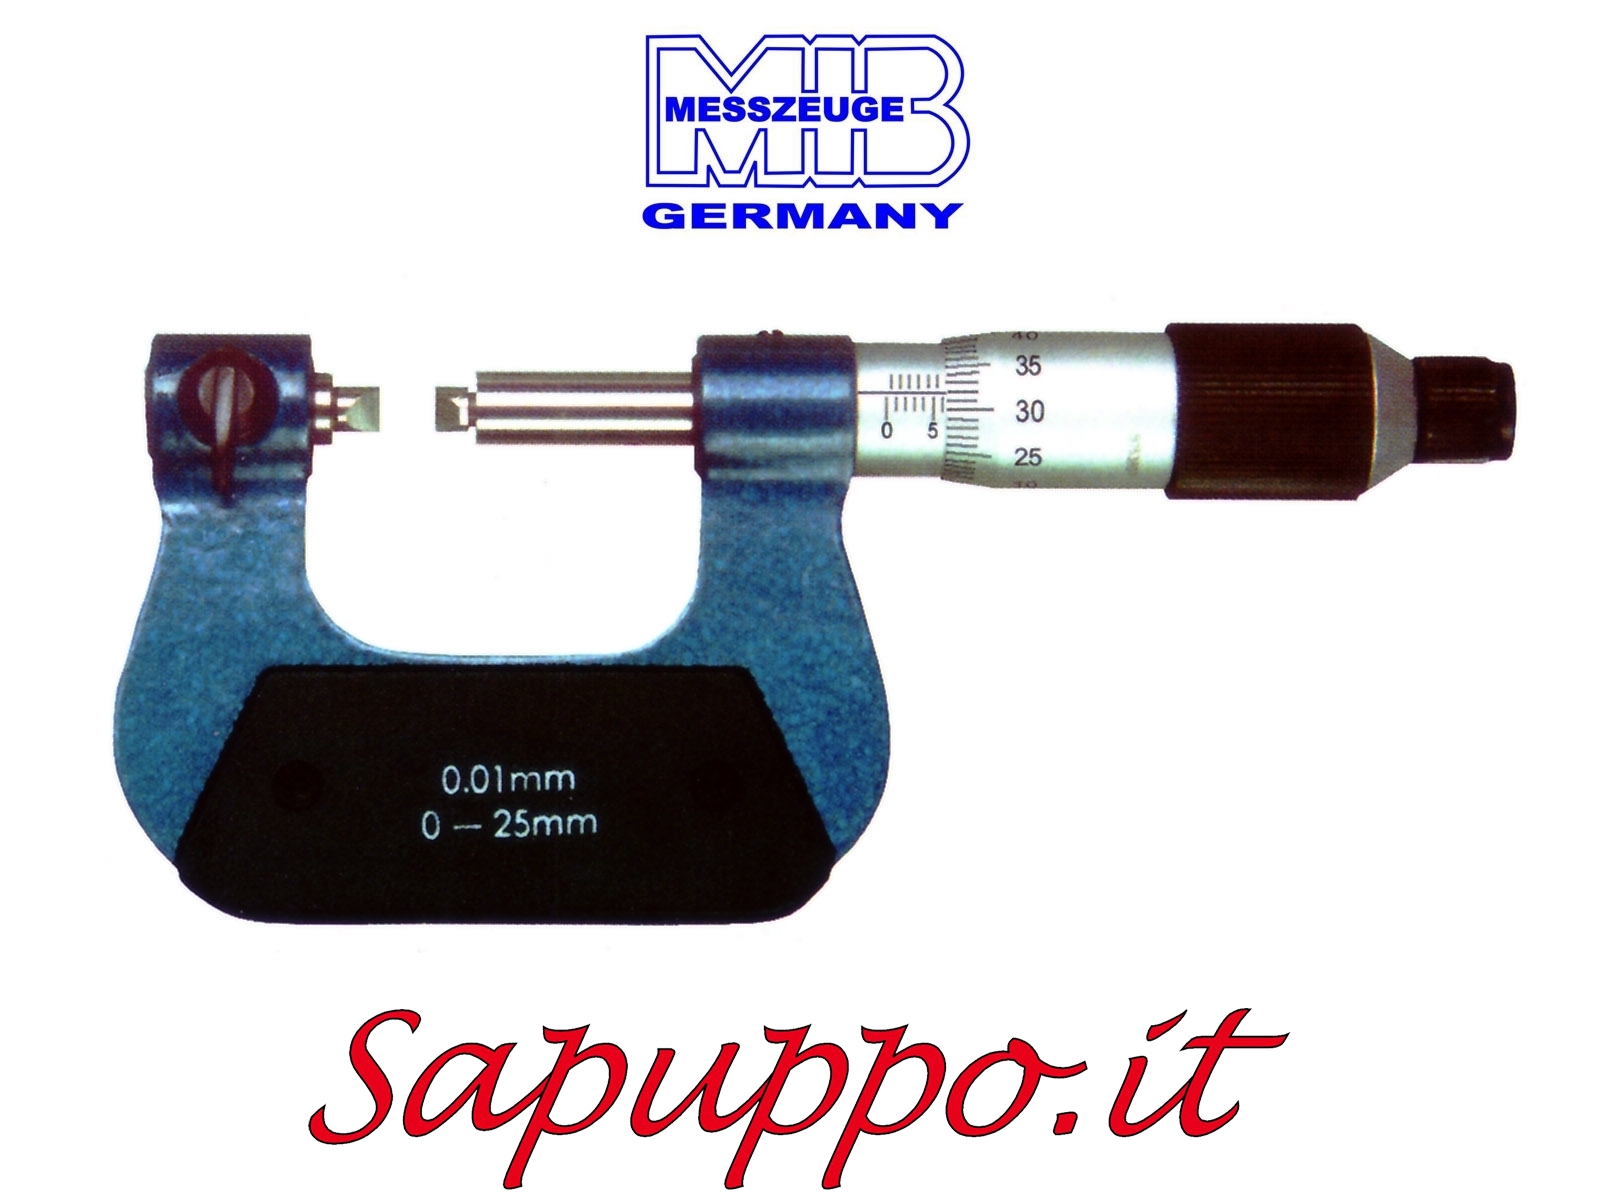 Vendita online Micrometro universale con inserti intercambiabili asta di misurazione non rotante diam. 6,5 mm analogico MIB M 110